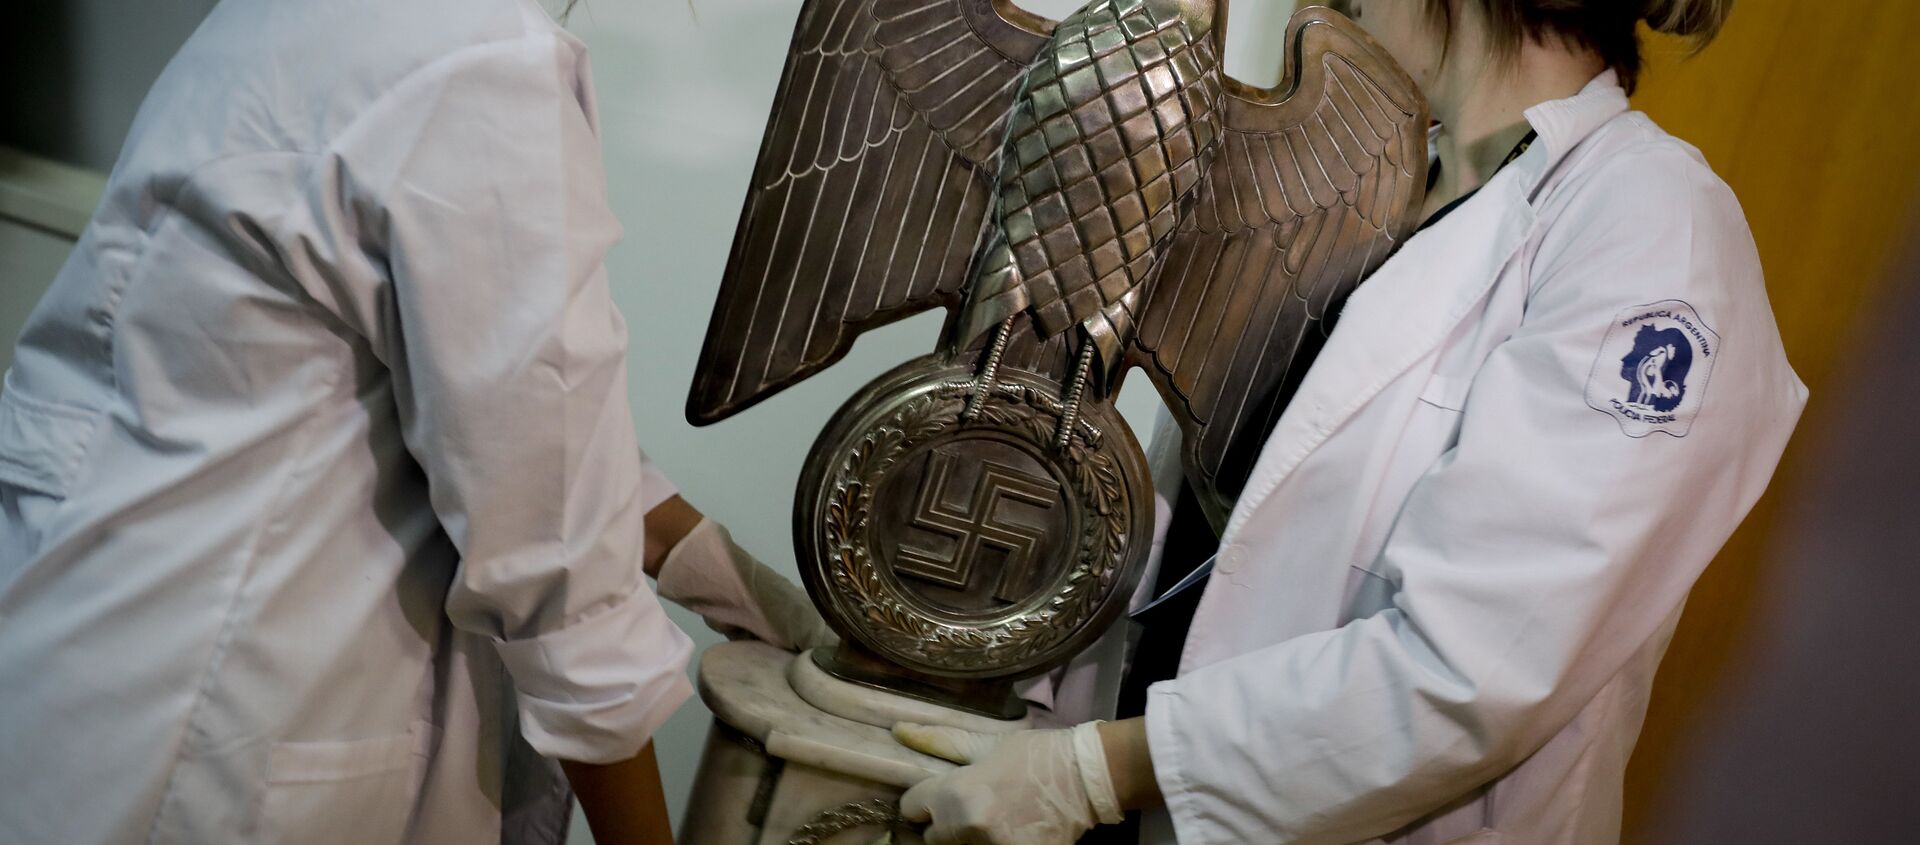 Artefactos con simbología nazi encontrados en Argentina en junio de 2017 - Sputnik Mundo, 1920, 28.11.2020